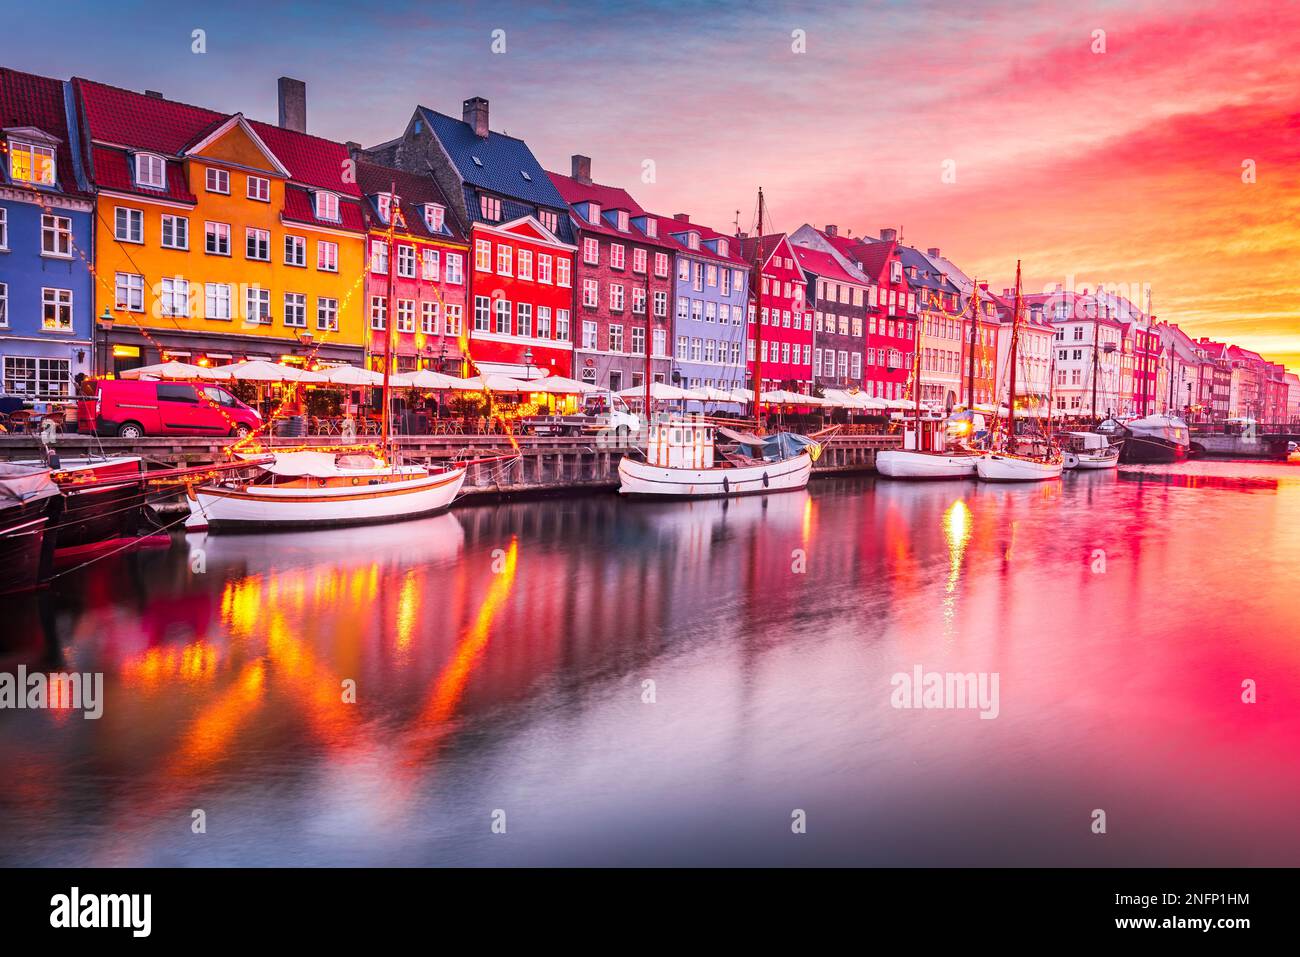 Copenhague, Dinamarca. Experimente la impresionante belleza del canal Nyhavn al amanecer, con sus icónicos edificios coloridos y sus serenos reflejos del agua. Foto de stock